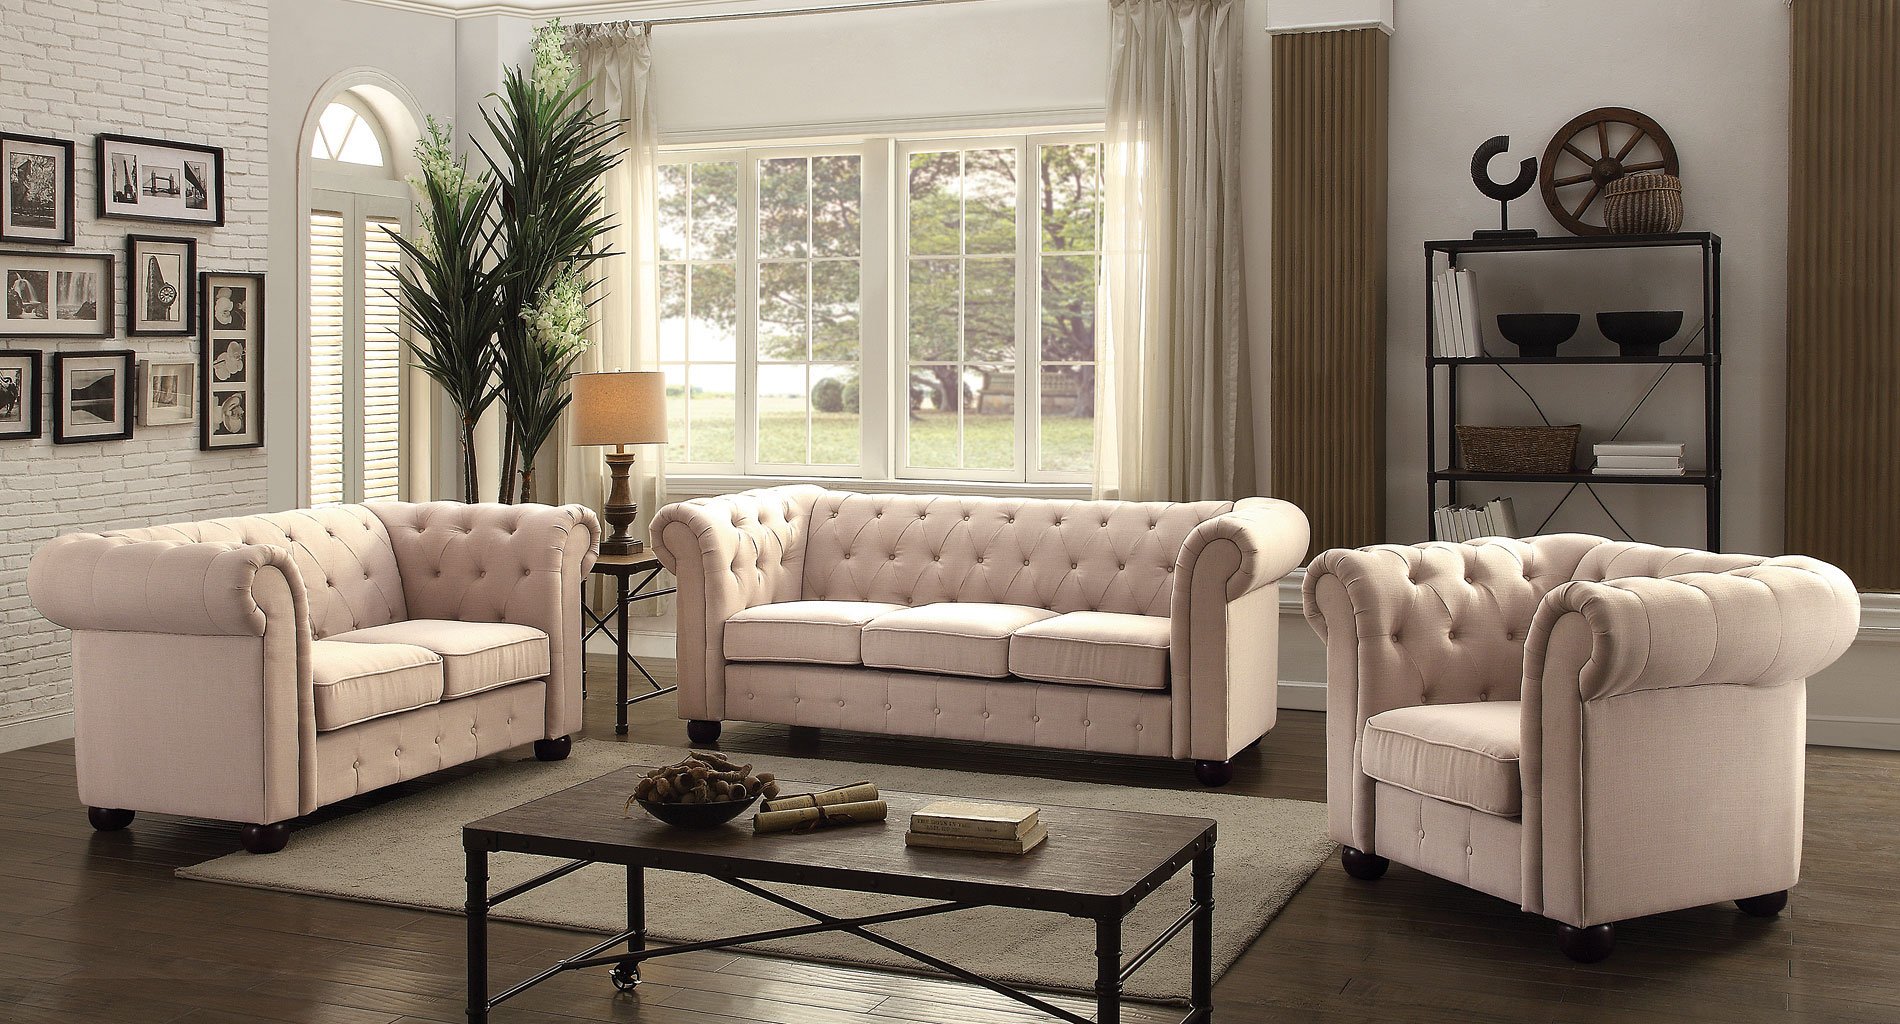 tufted living room furniture set